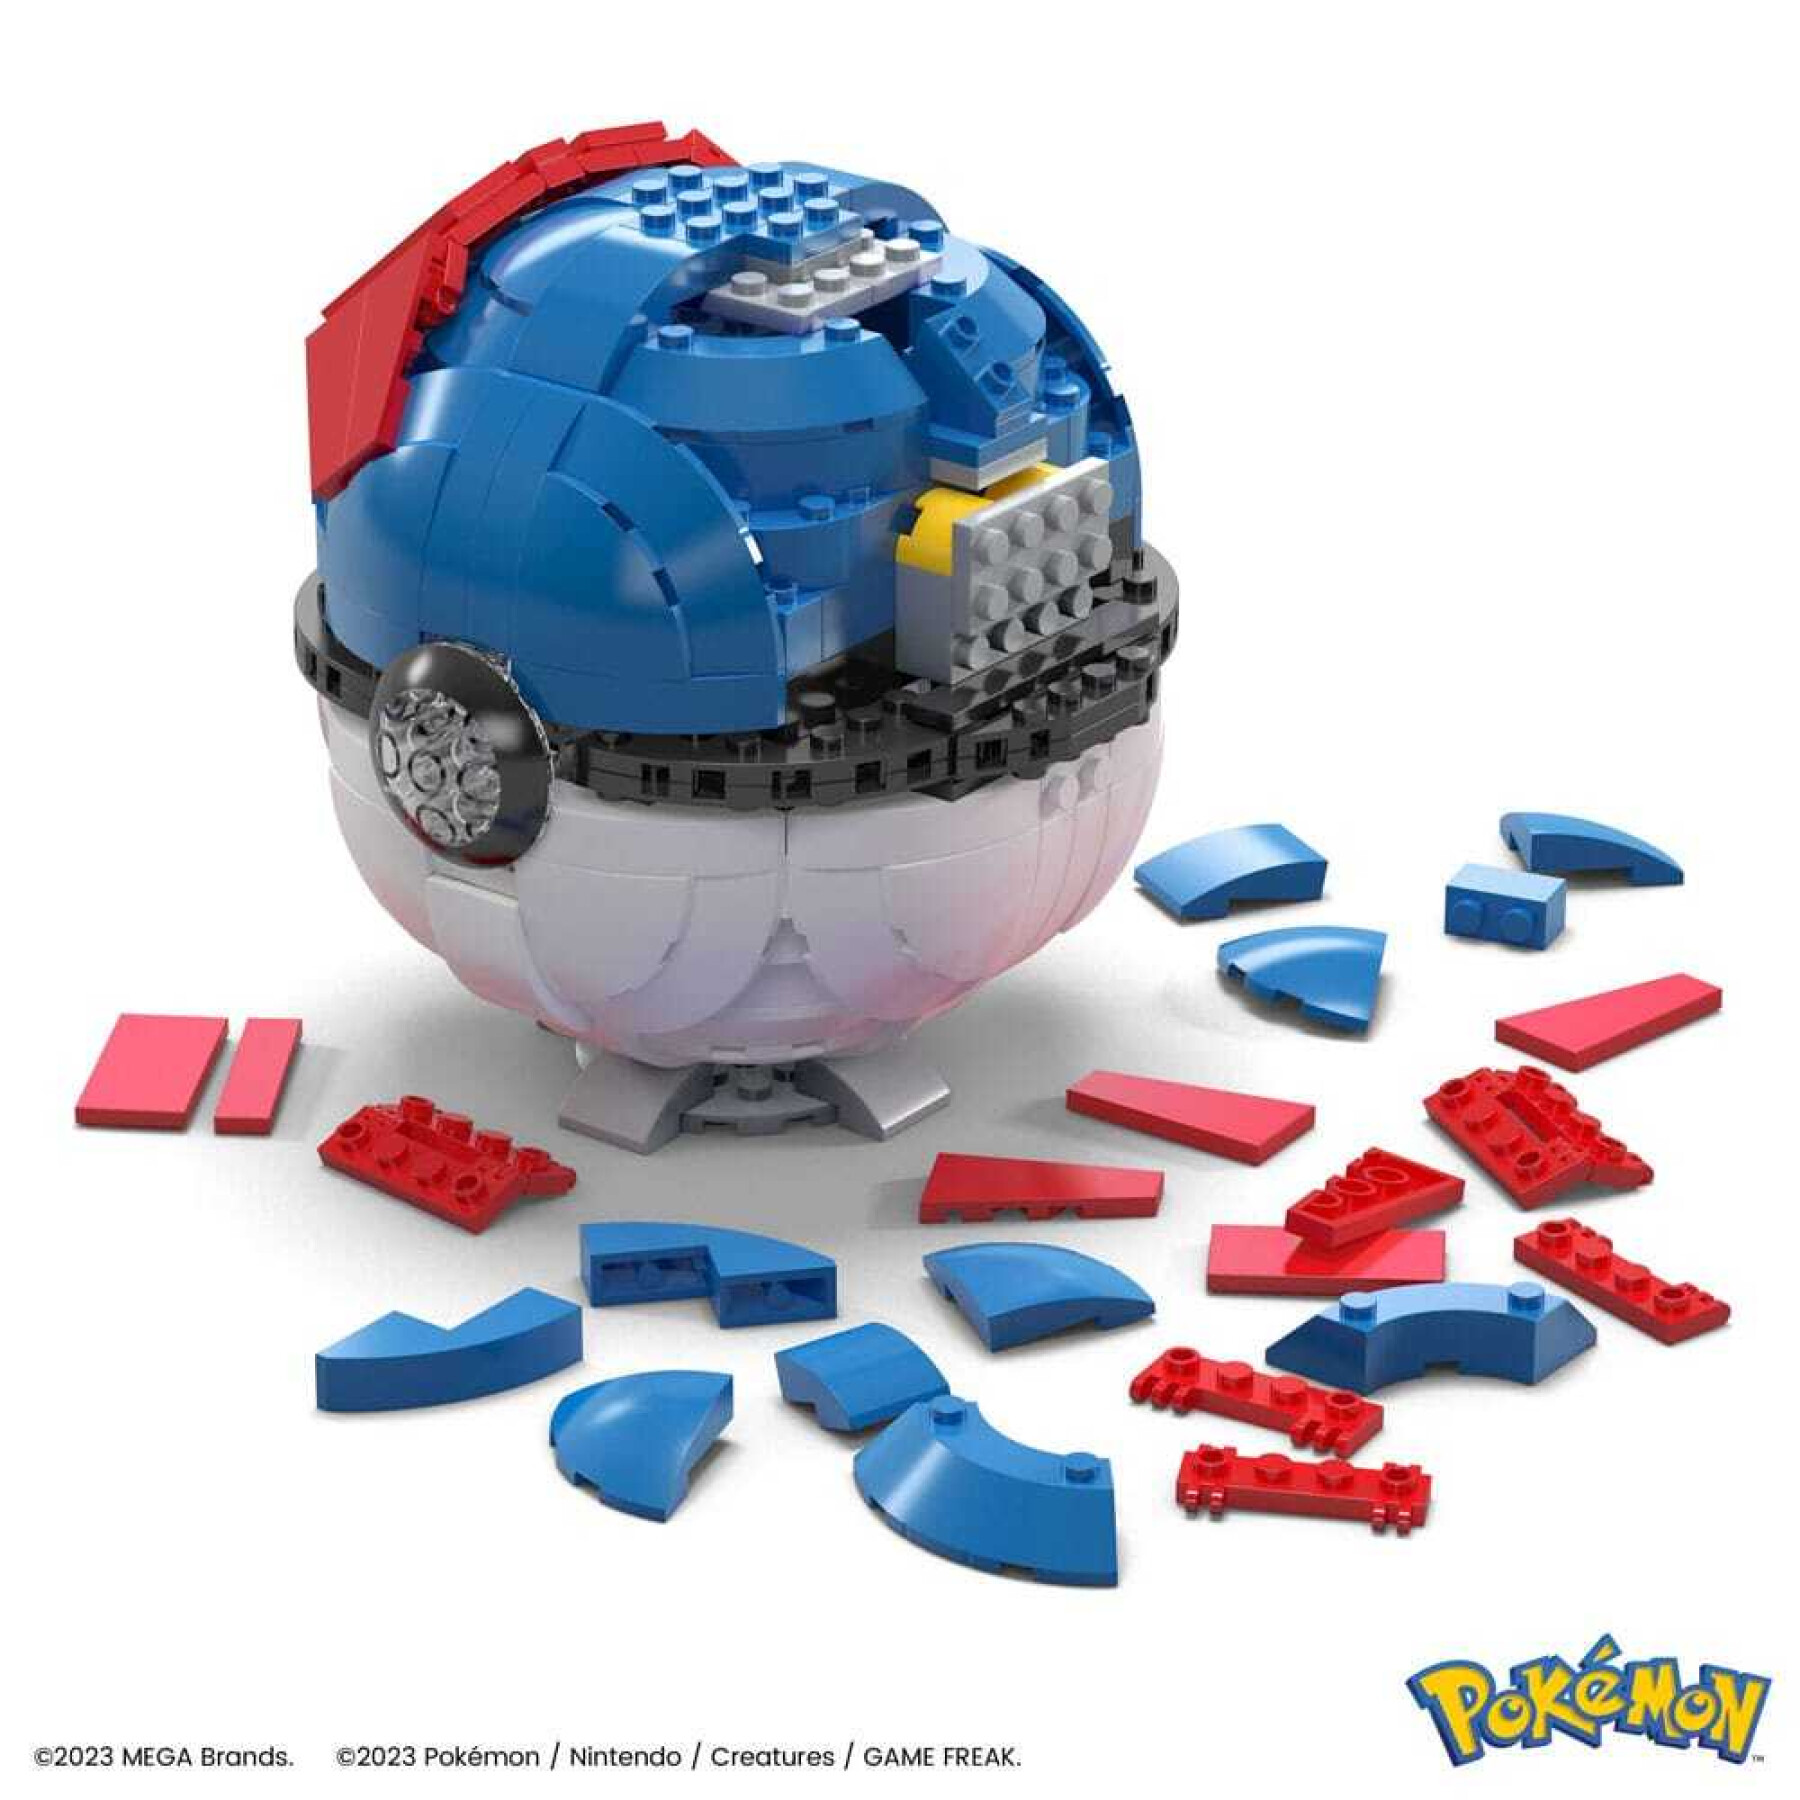 Konstruktionsspiele Mattel Pokémon Mega Construx Super Ball Géante